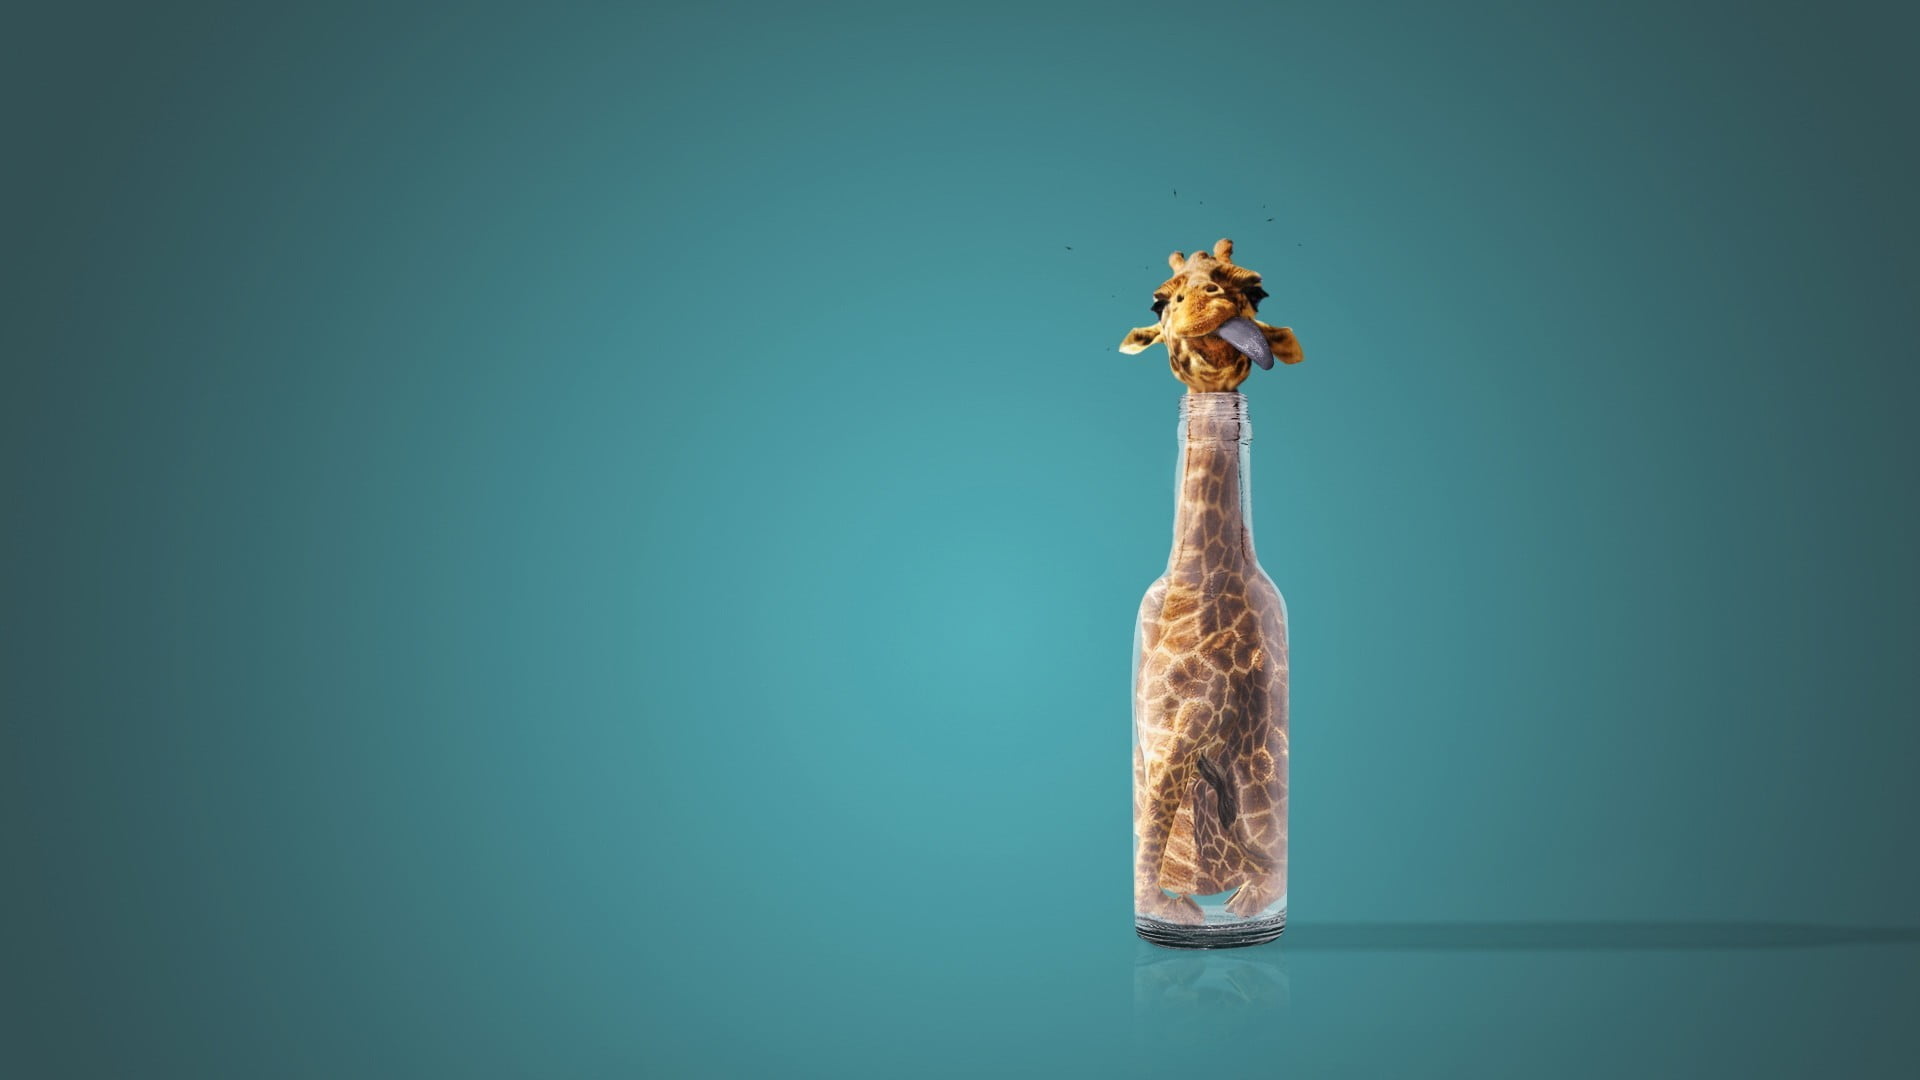 giraffe in bottle illustration, humor, bottles, studio shot, colored background